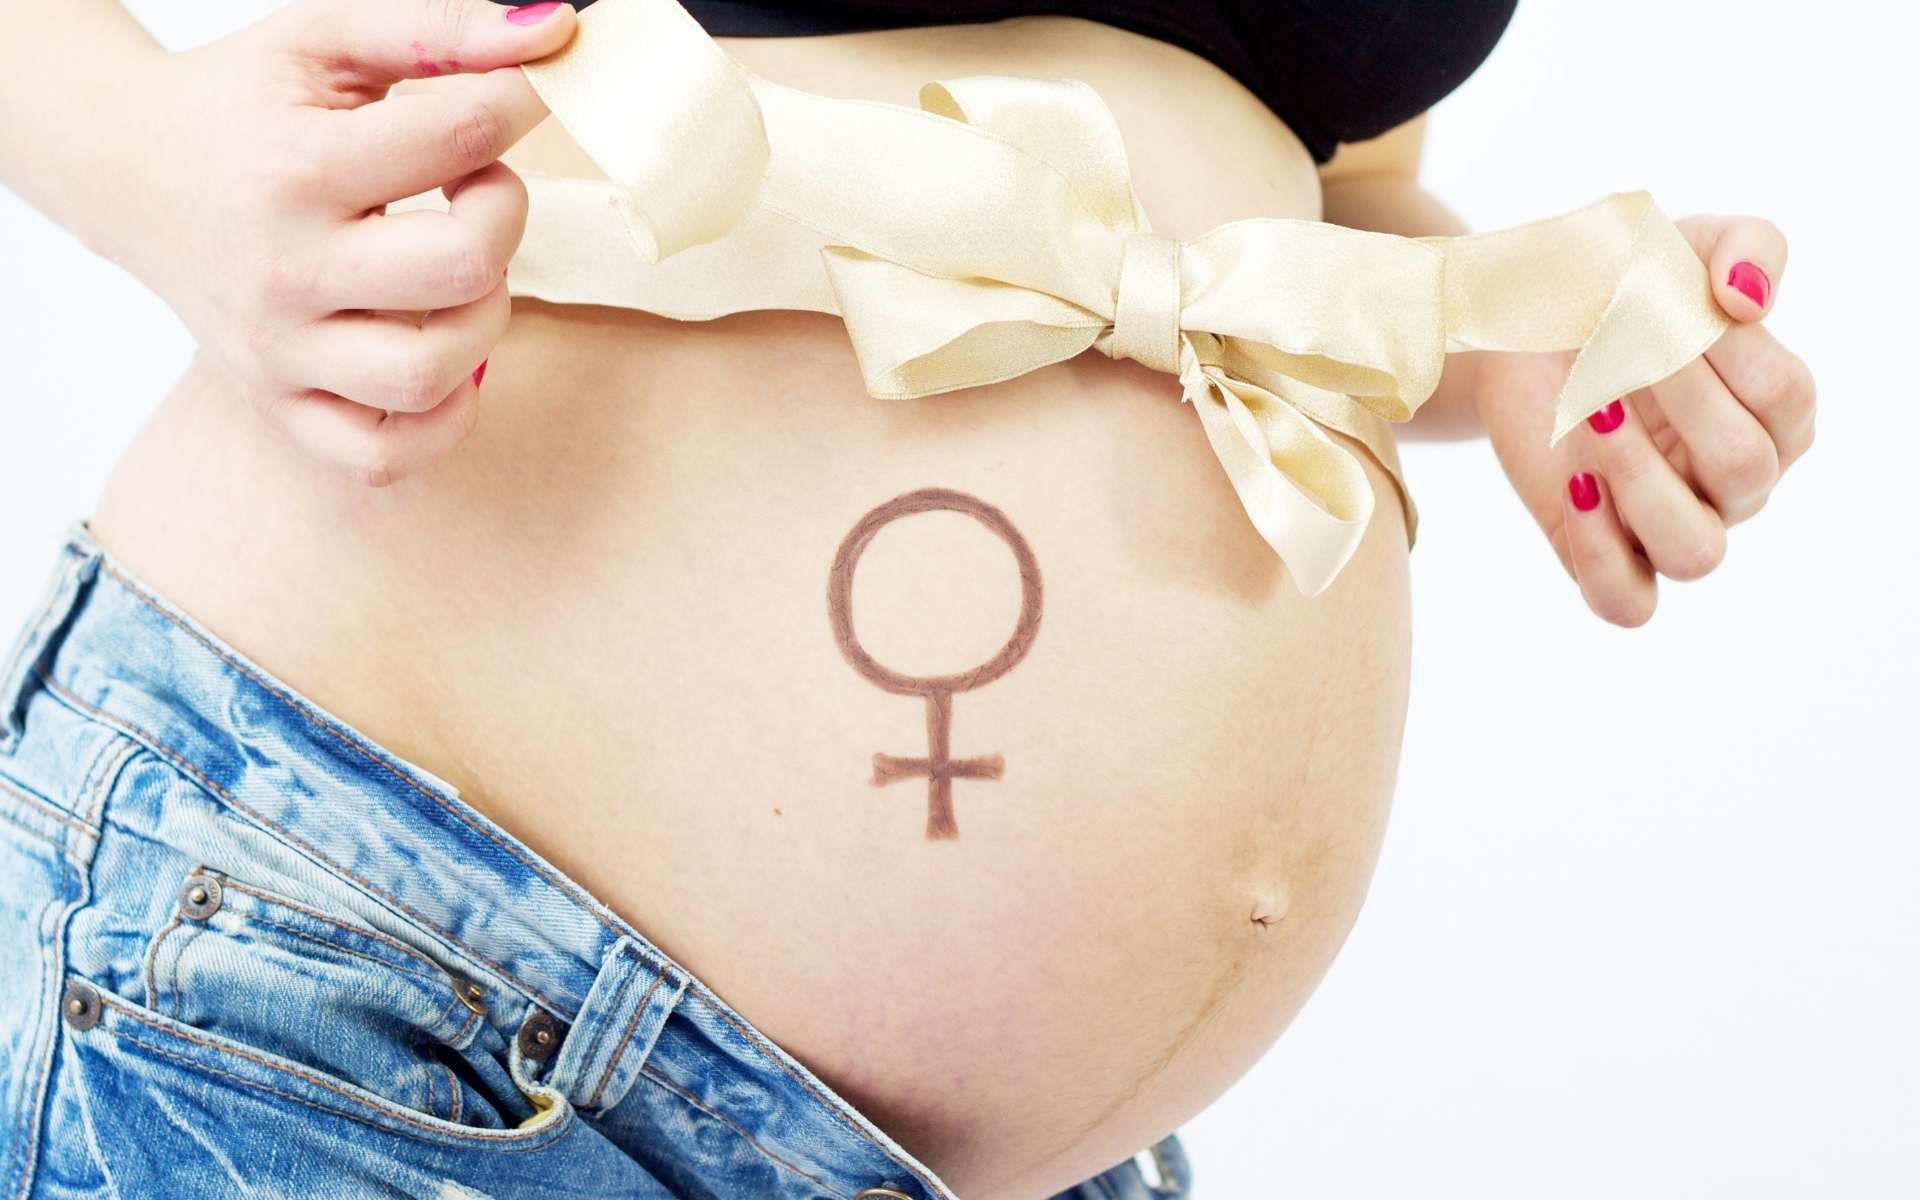 Uma mulher grávida enfitando sua própria barriga. Abaixo dessa fita, um símbolo que comumente representa o sexo feminino.